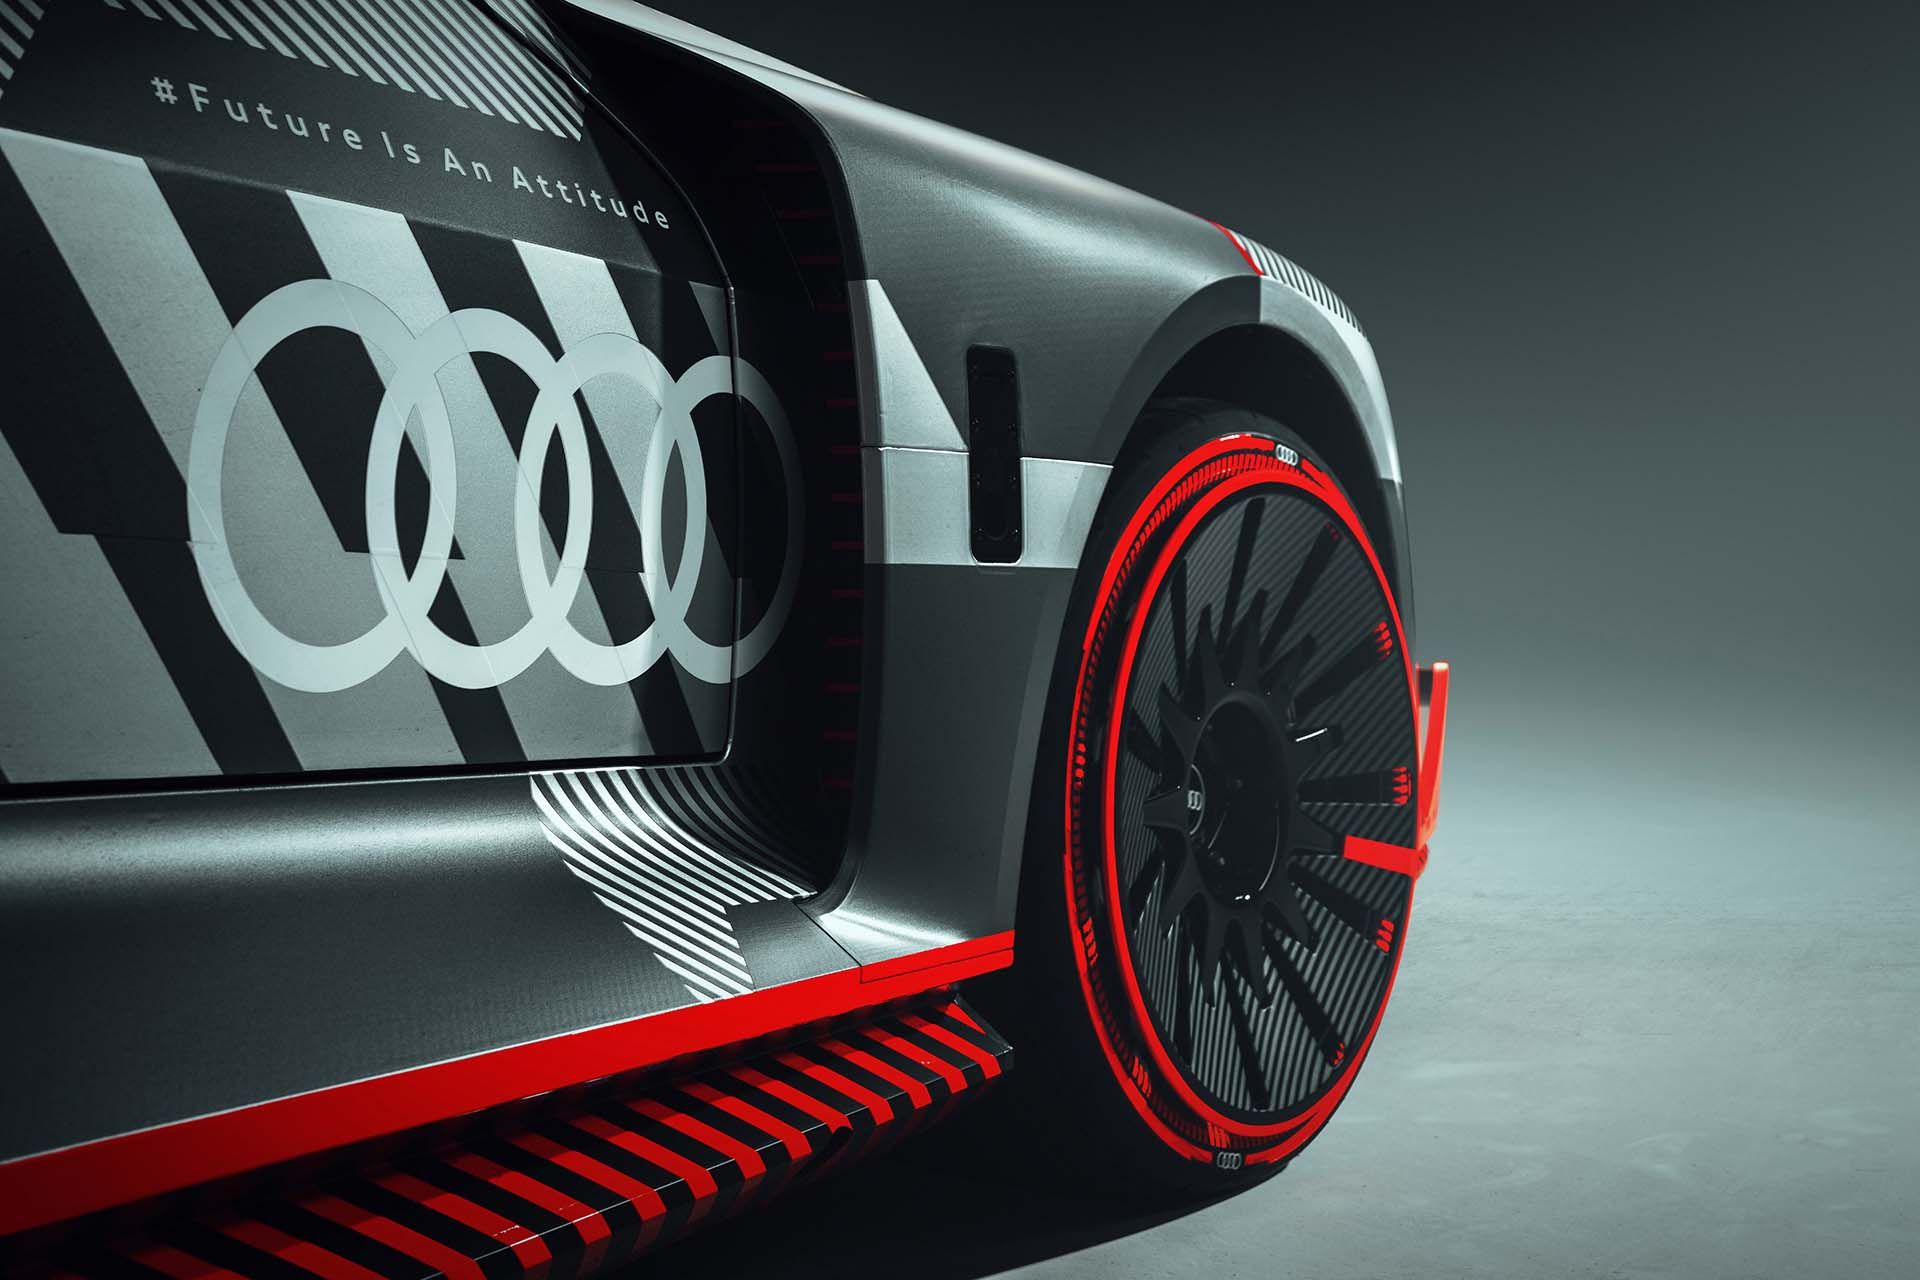 Detalle del lateral y de la rueda delantera del Audi S1 Hoonitron